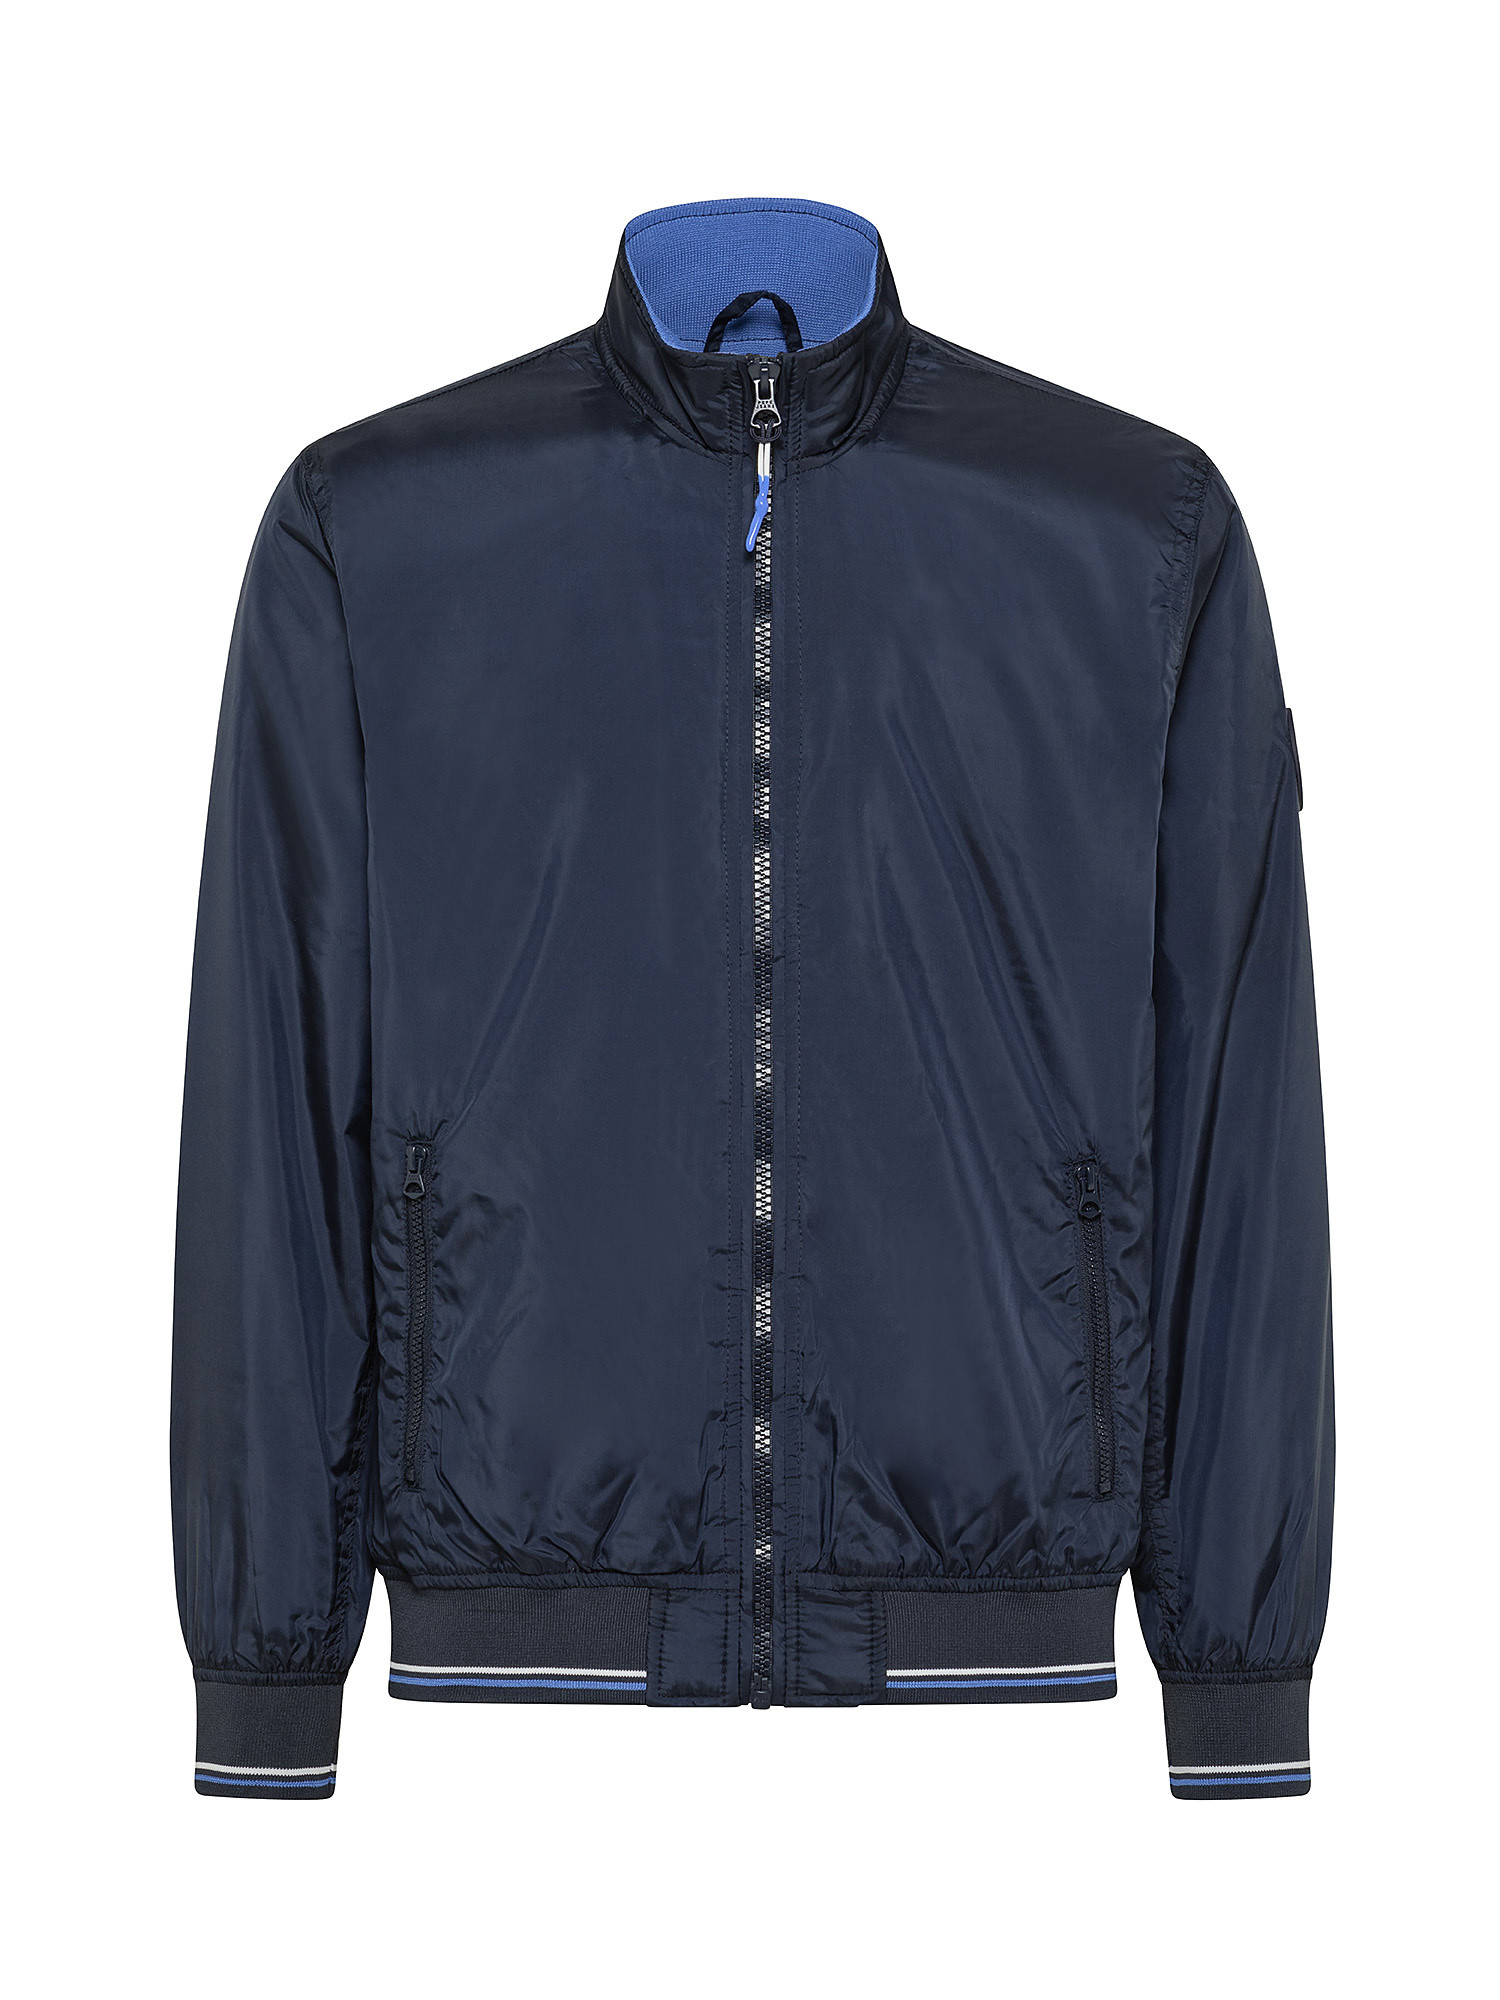 Jake back zip jacket, Dark Blue, large image number 0